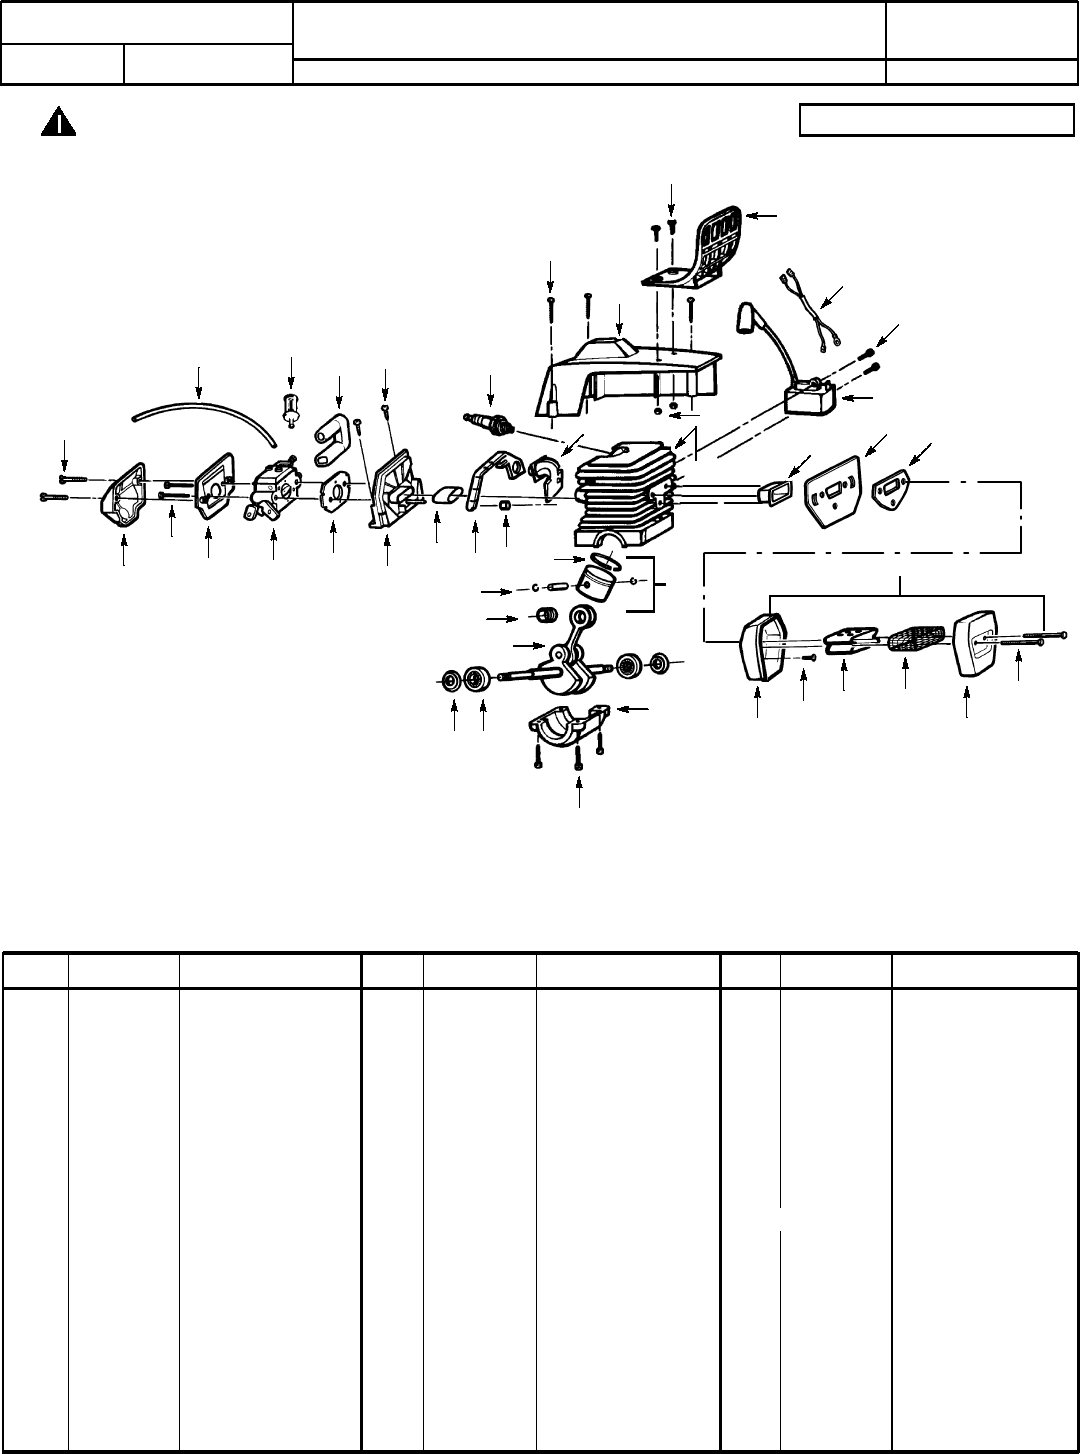 Poulan P2500 Parts Manual IPL, 2200, 2500, 2600, 2750, 2900, 3050, 1995